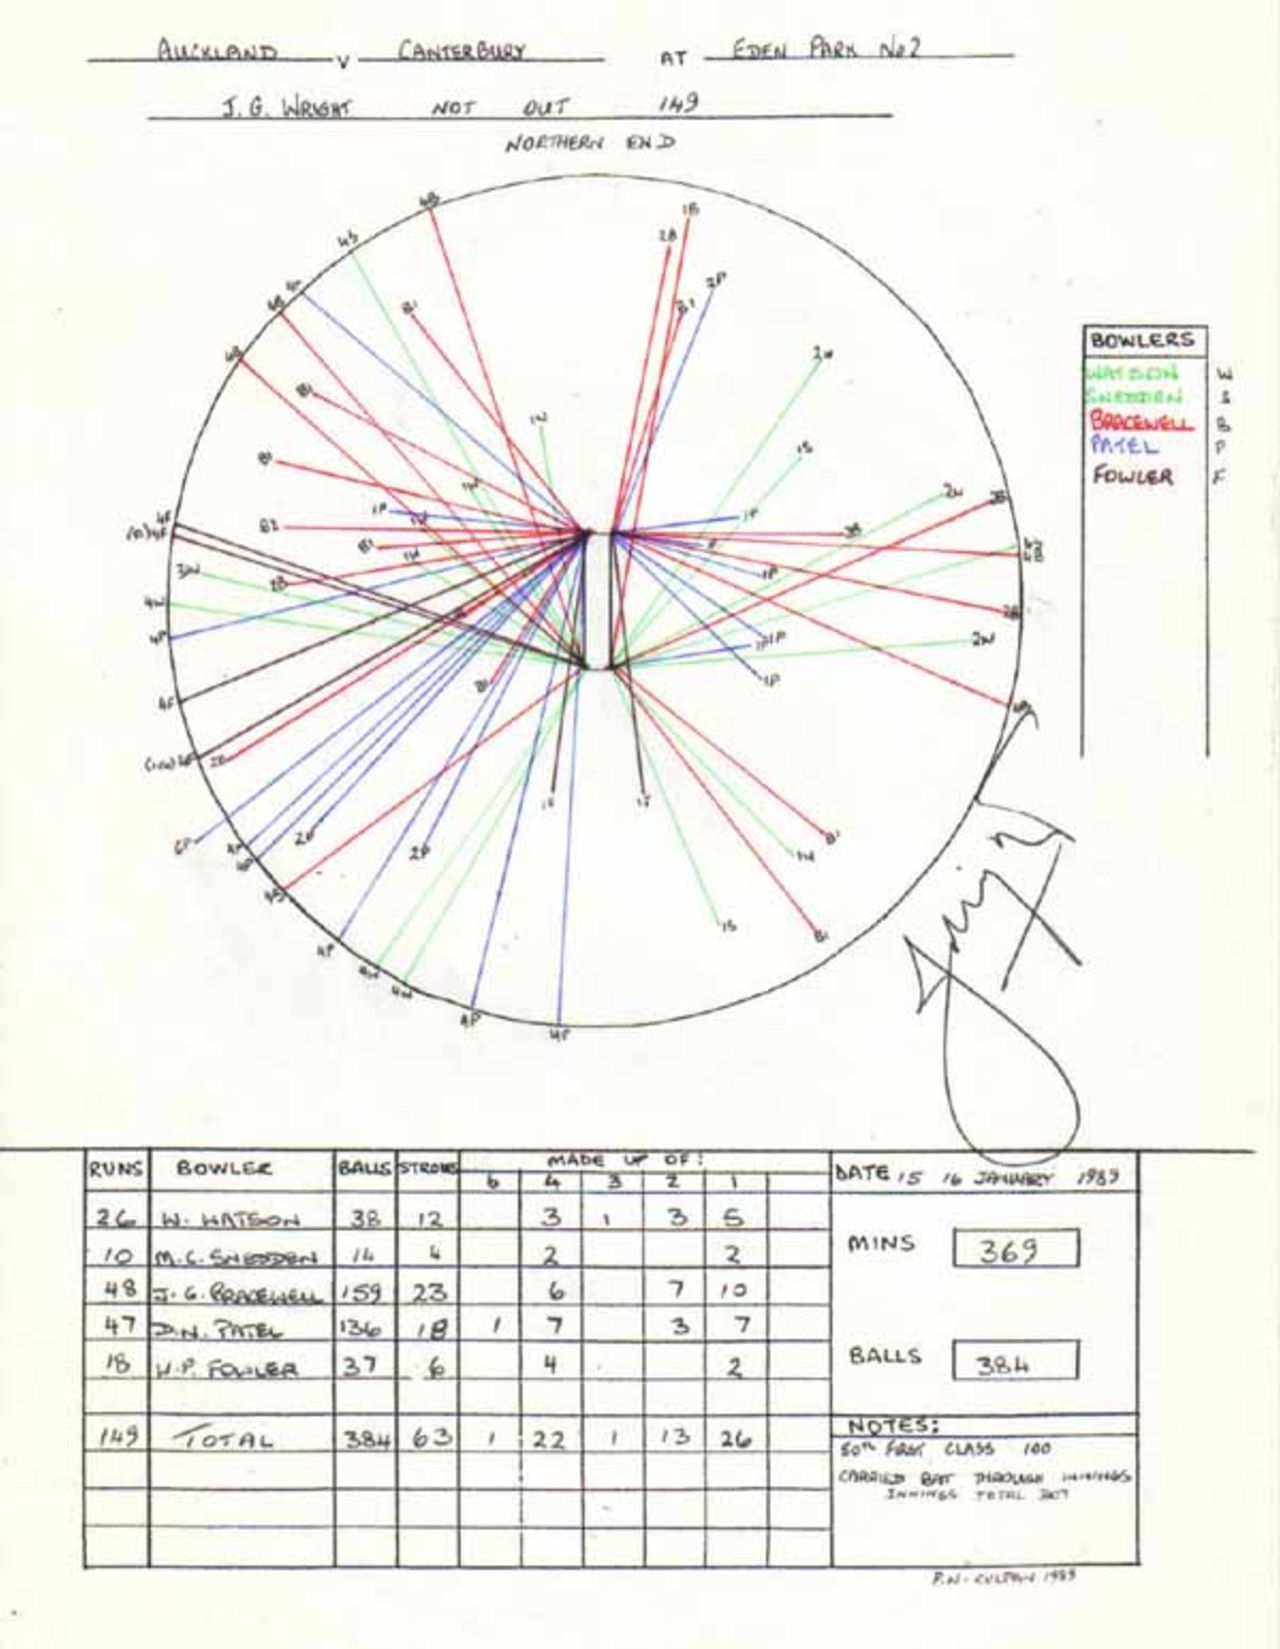 Wagon Wheel of John Wright's 149 v Auckland, Eden Park No2 15-16 January 1989